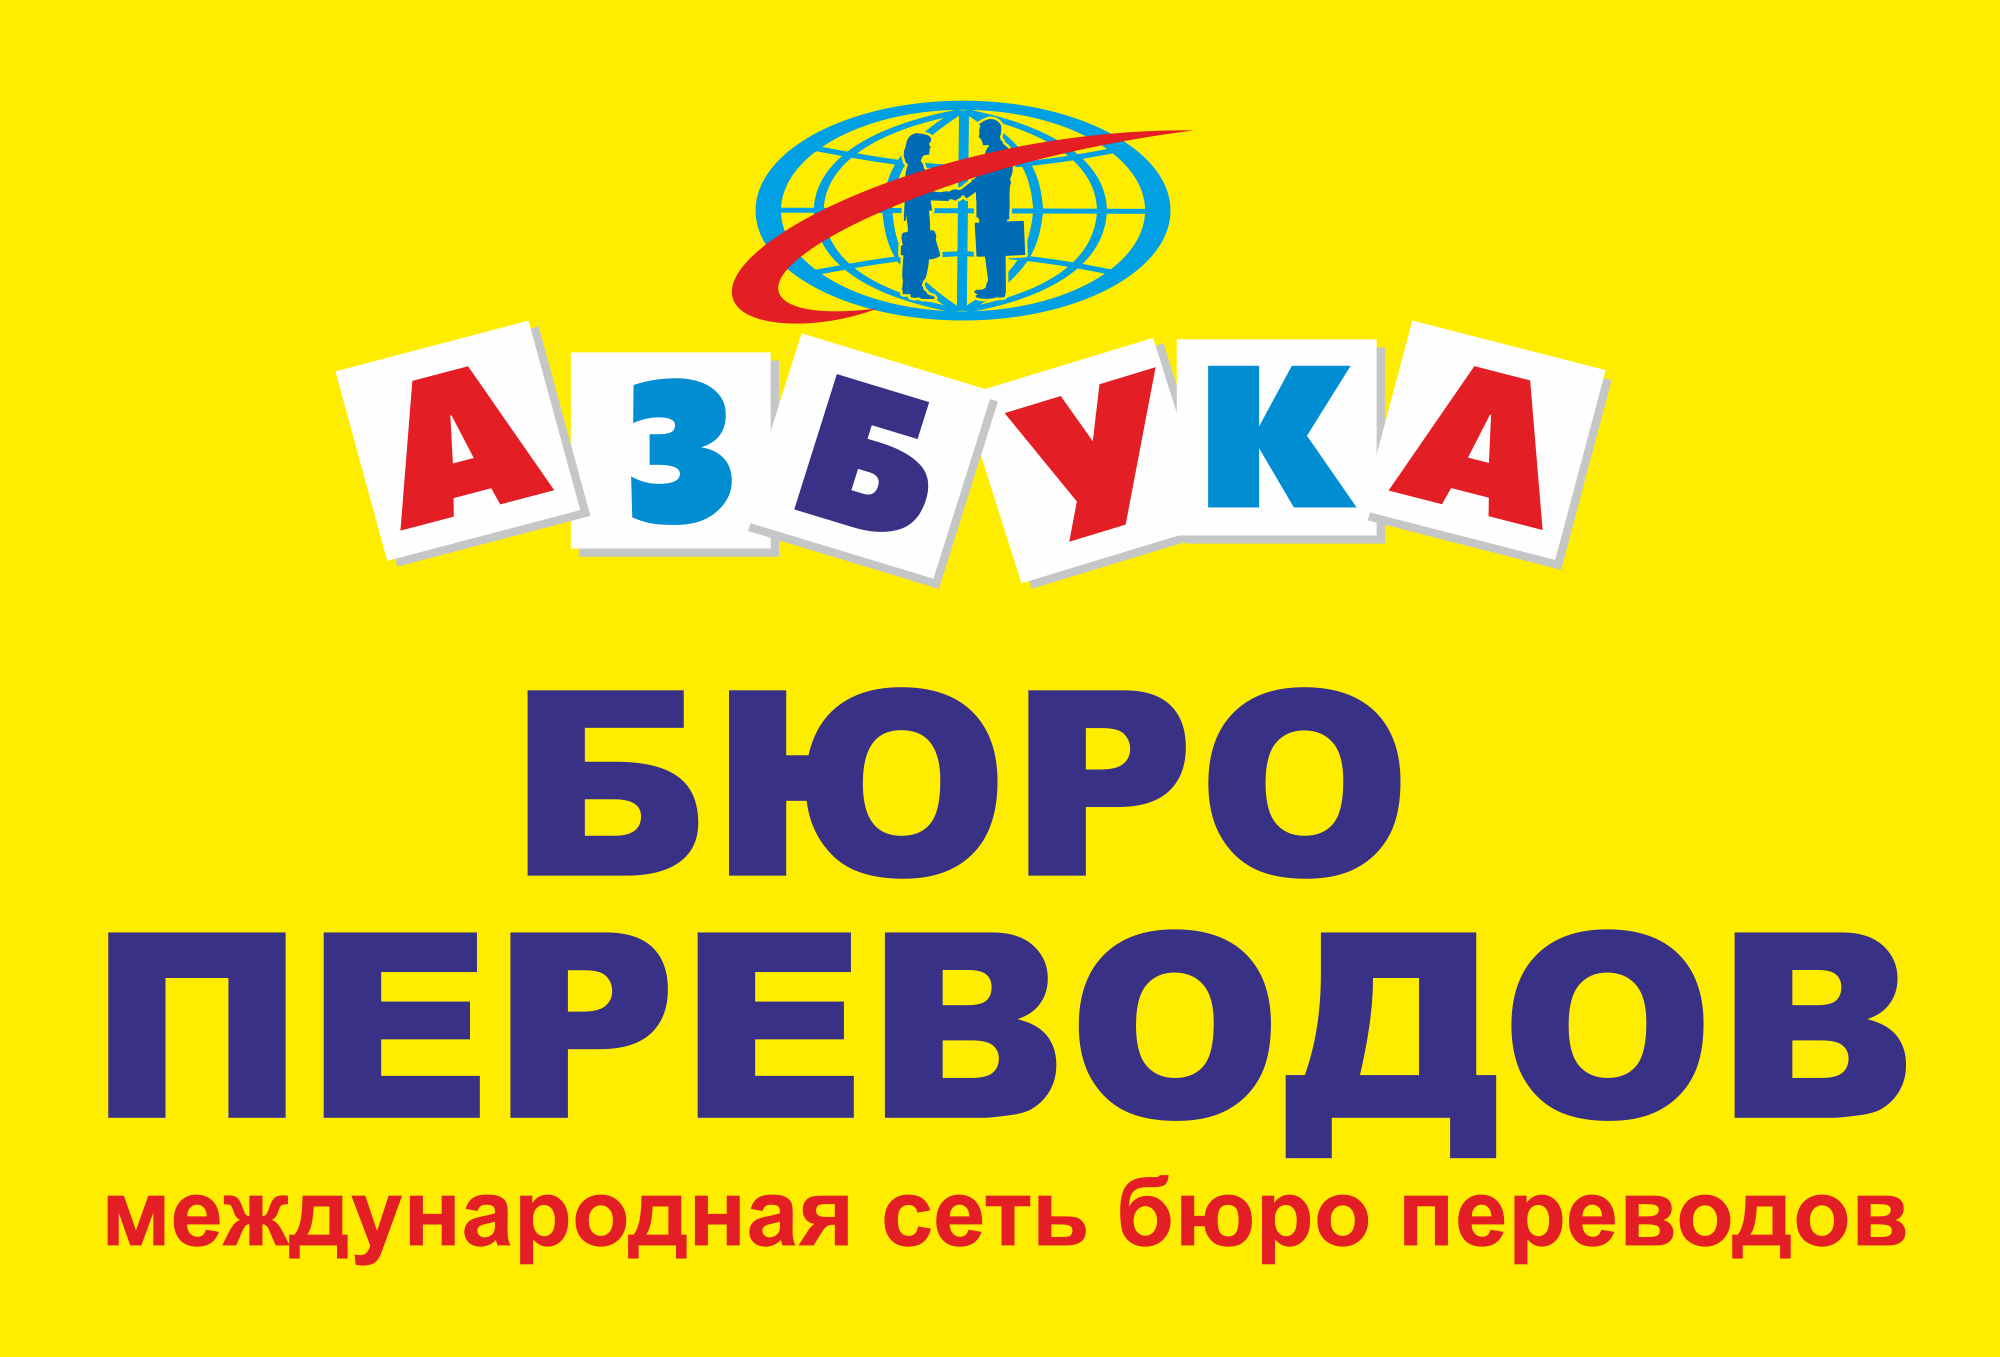 Бюро переводов "Азбука" в Москве